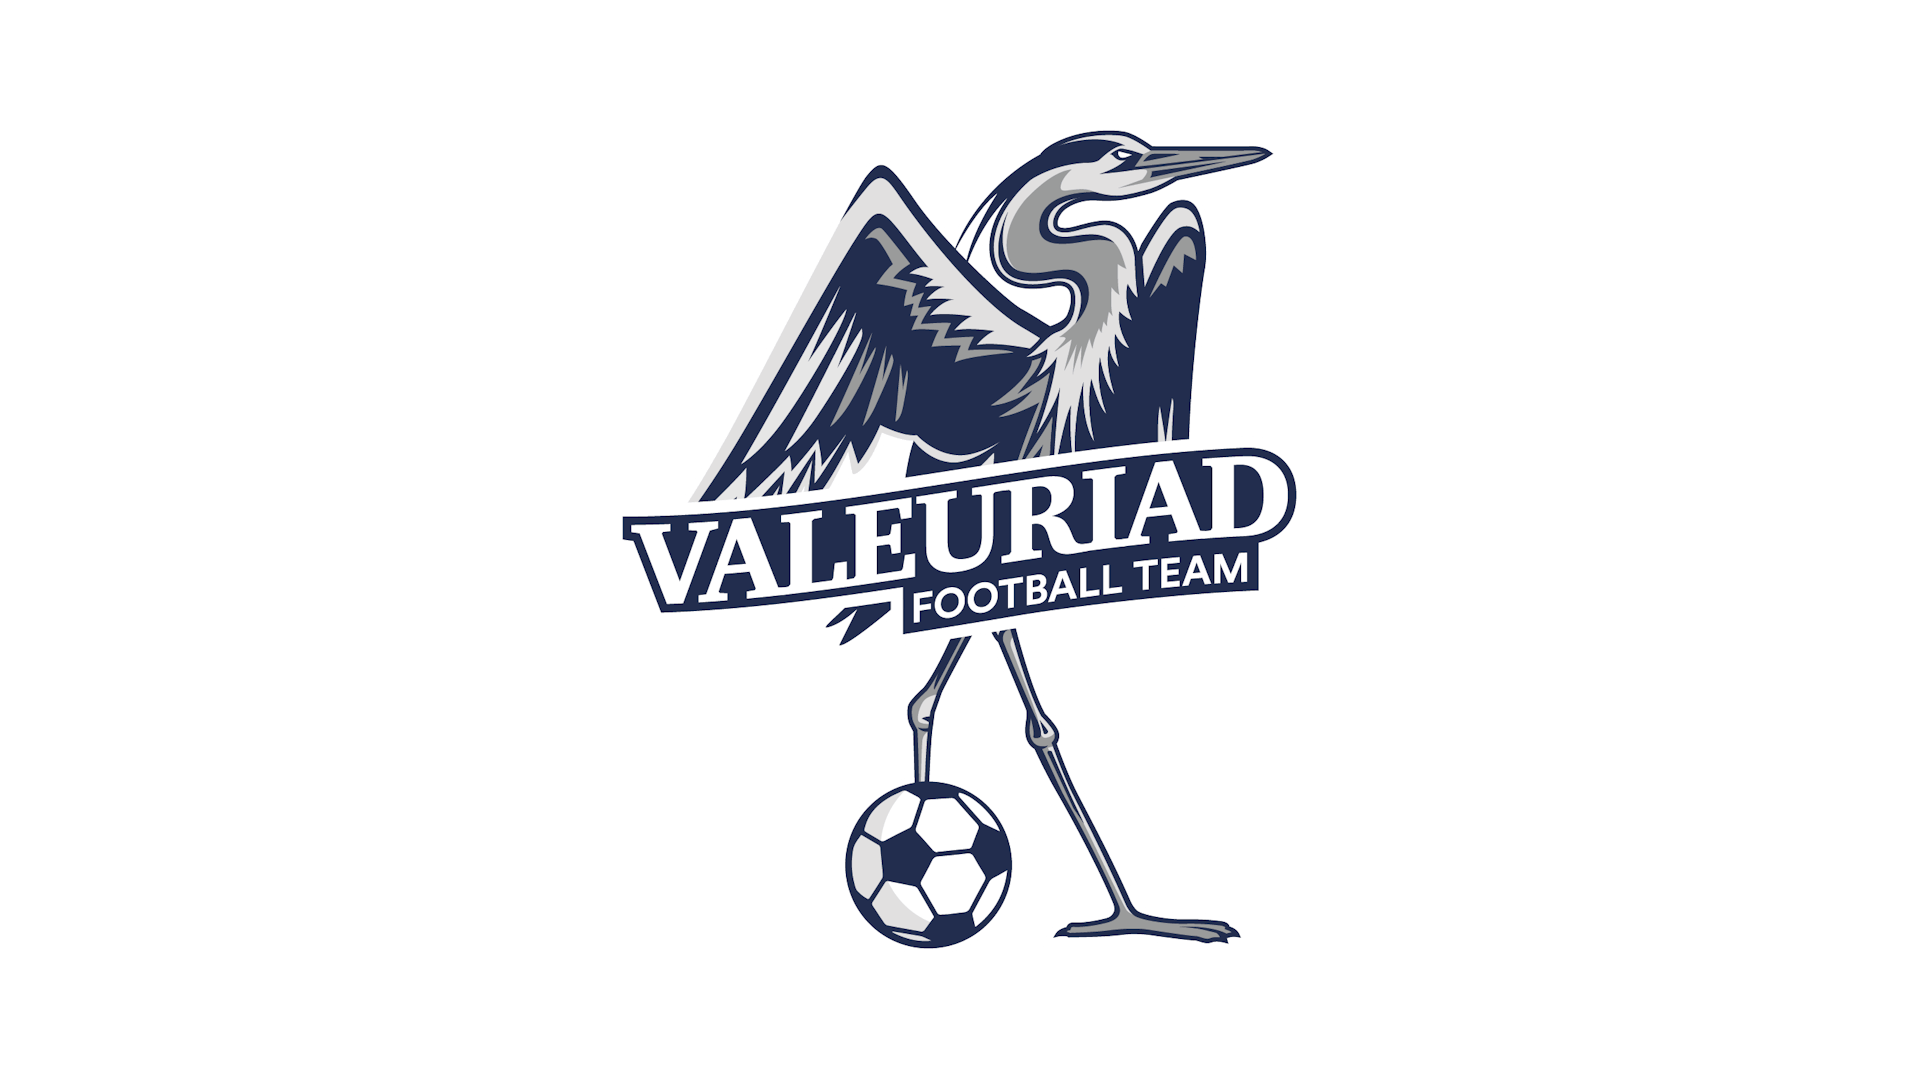 Création d'une illustration de type logo pour la Valeuriad Football Team.